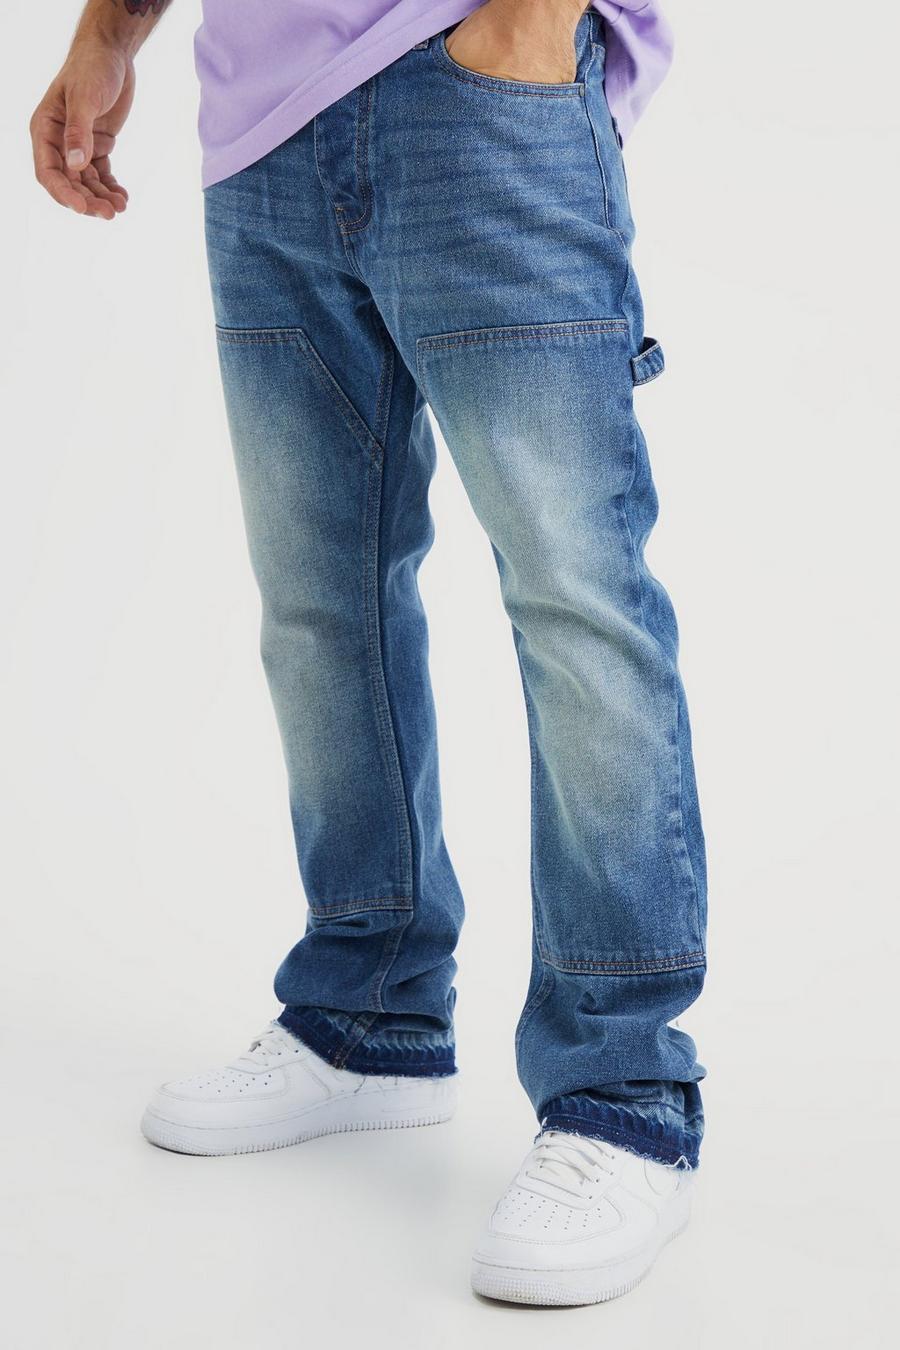 Jeans a zampa Slim Fit in denim rigido stile Carpenter, Vintage blue